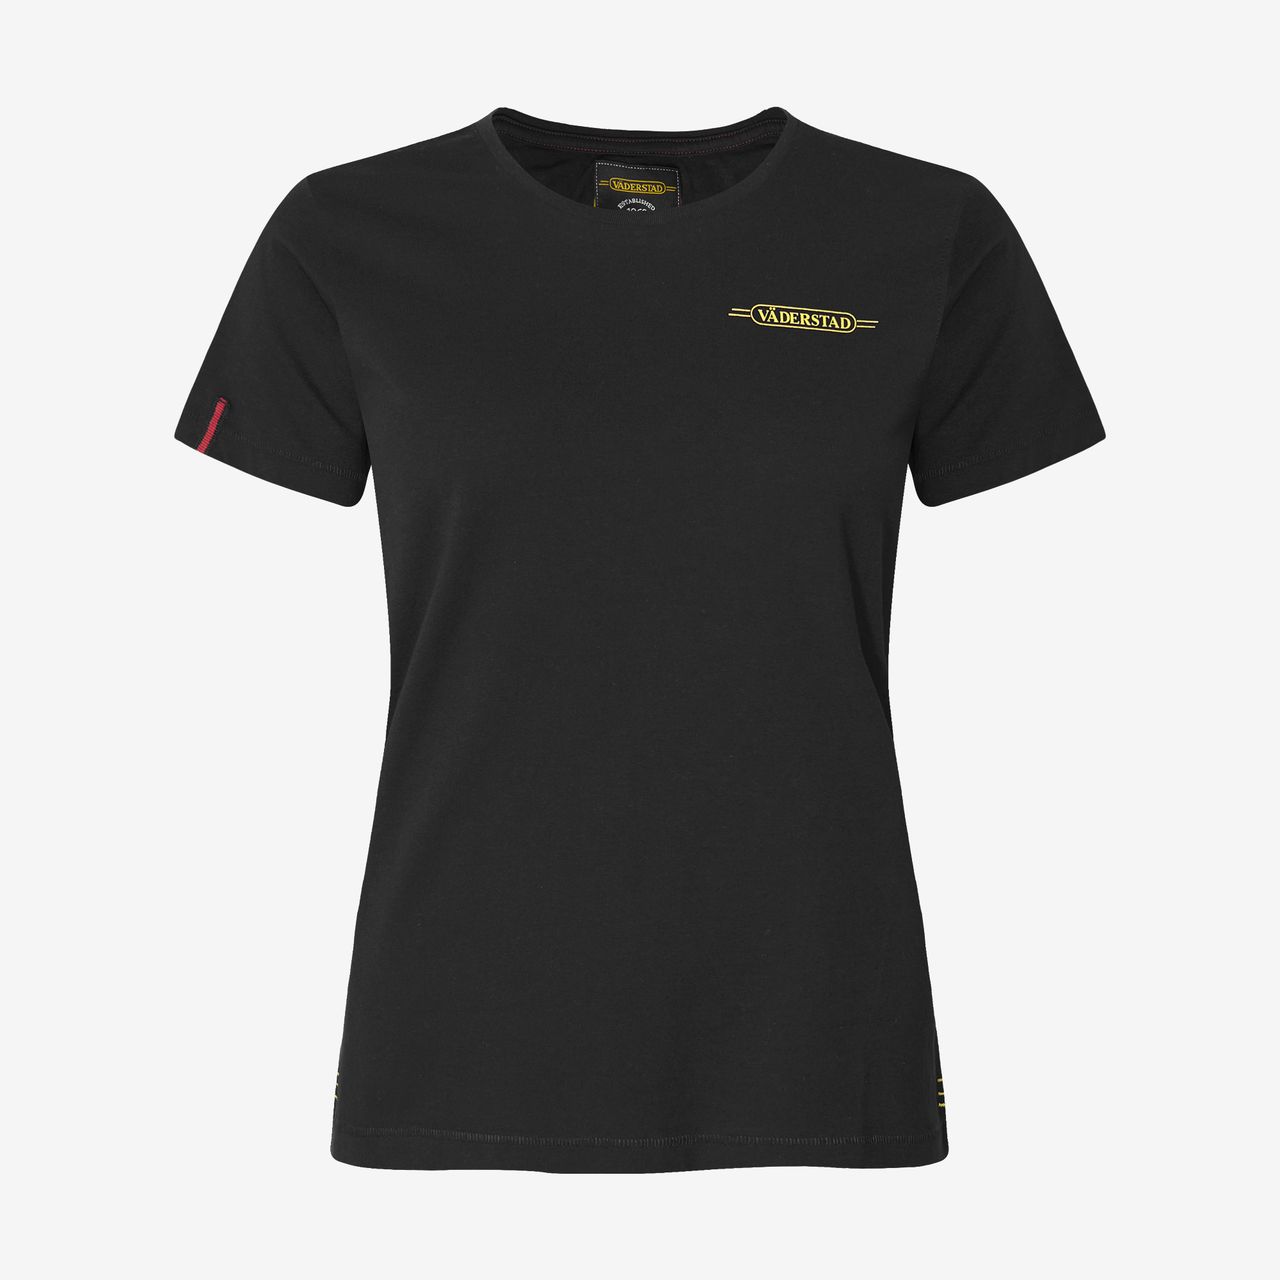 T-shirt black (XL)